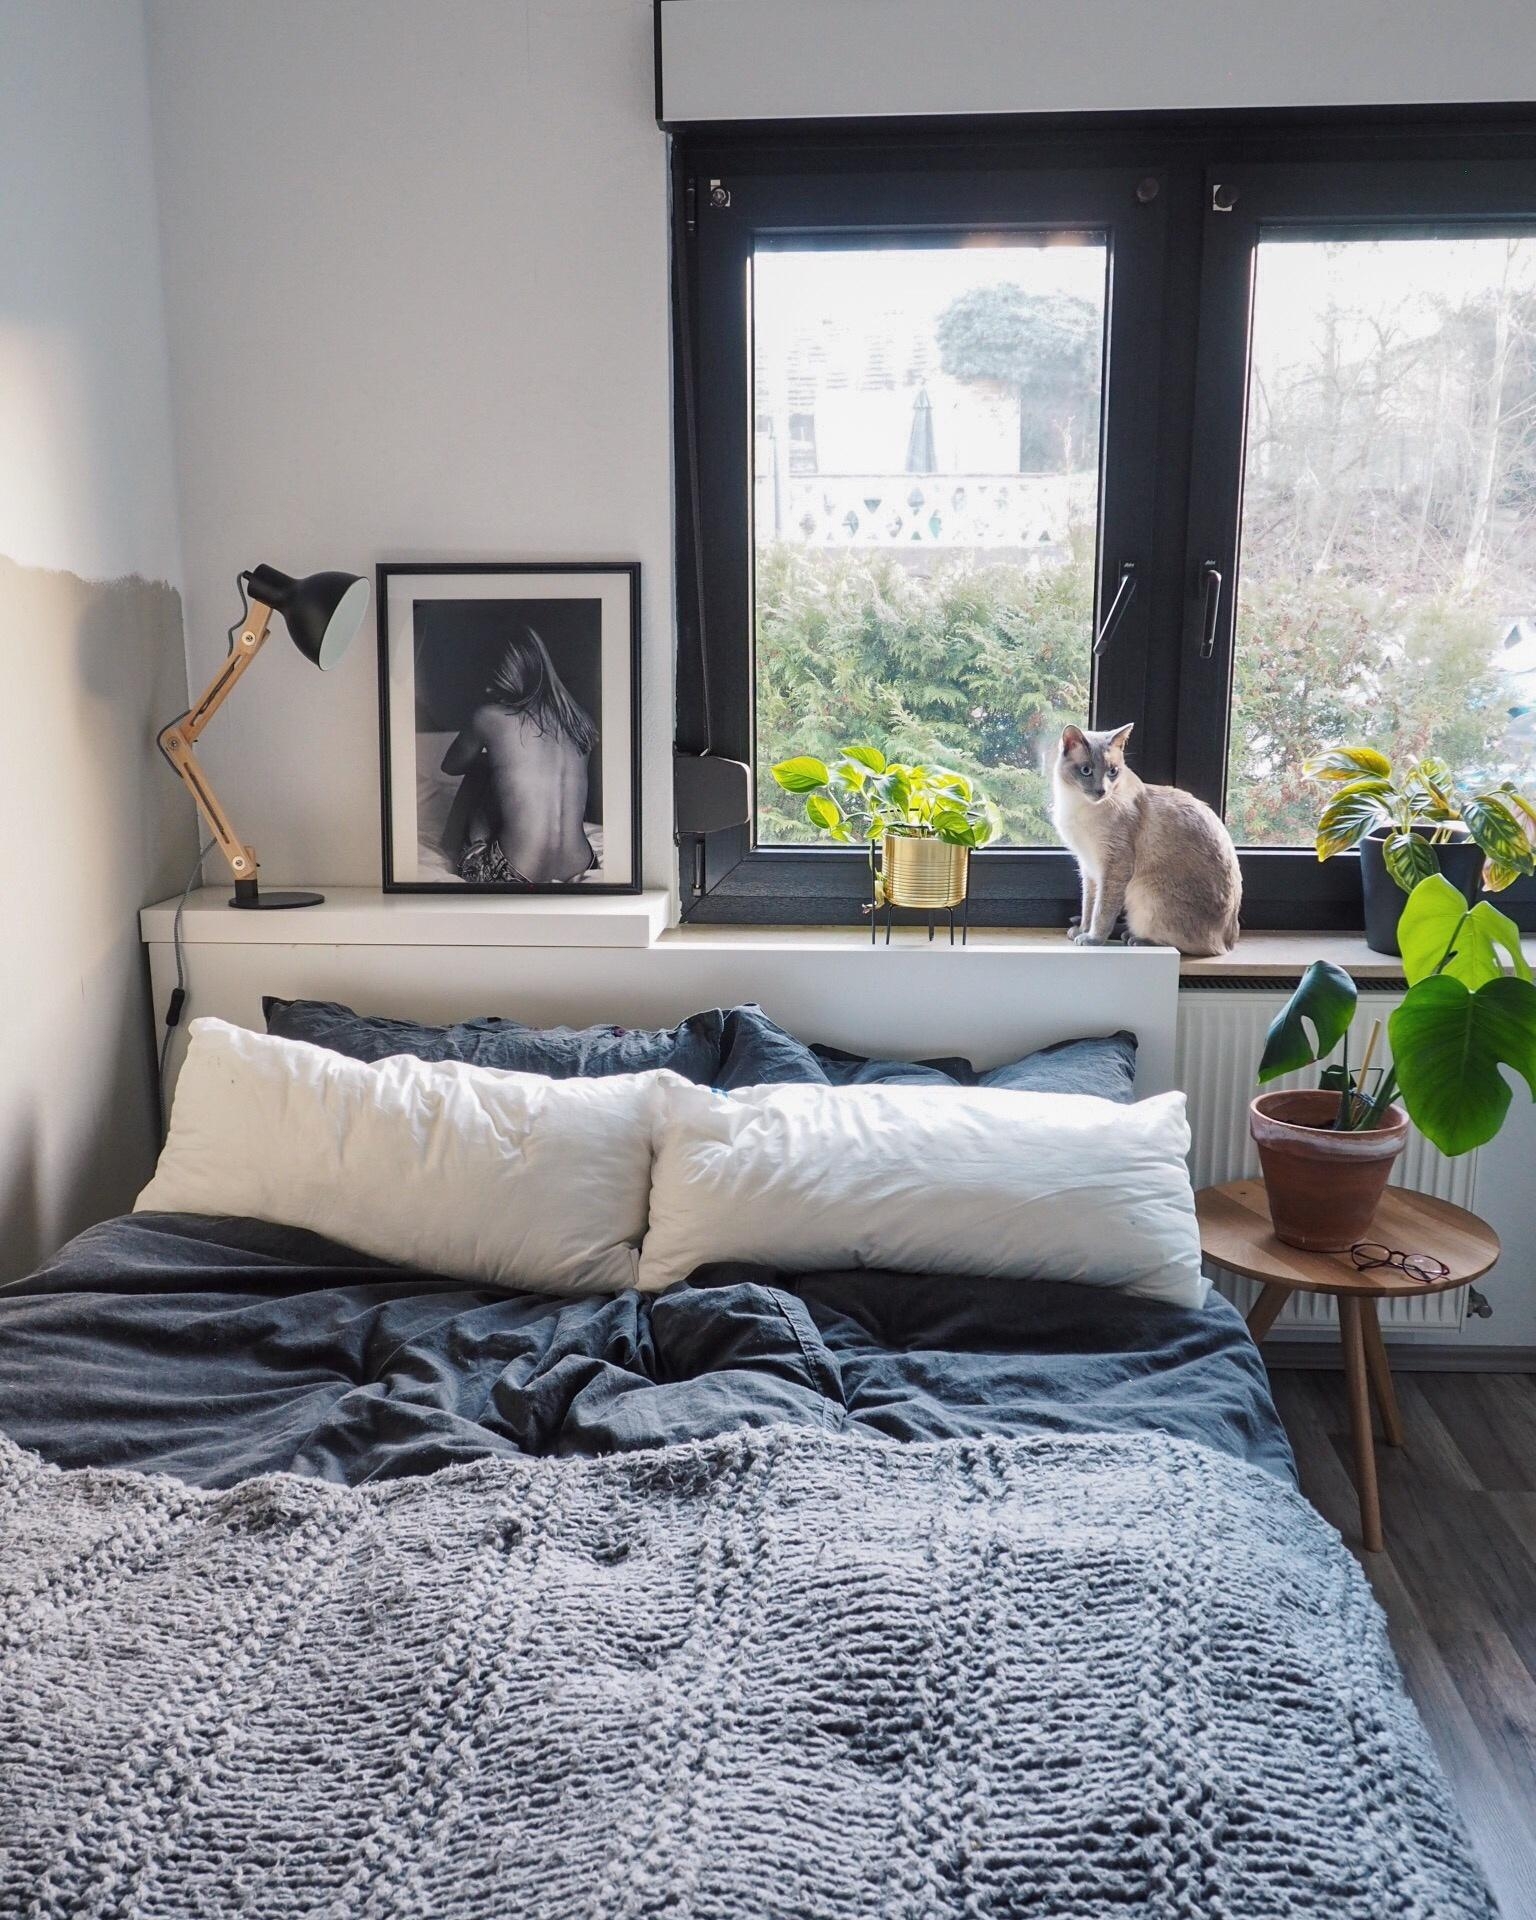 Endlich wieder ein paar Sonnenstrahlen 😍
#couchliebt #bedroom #bedroominspo #whiteinterior